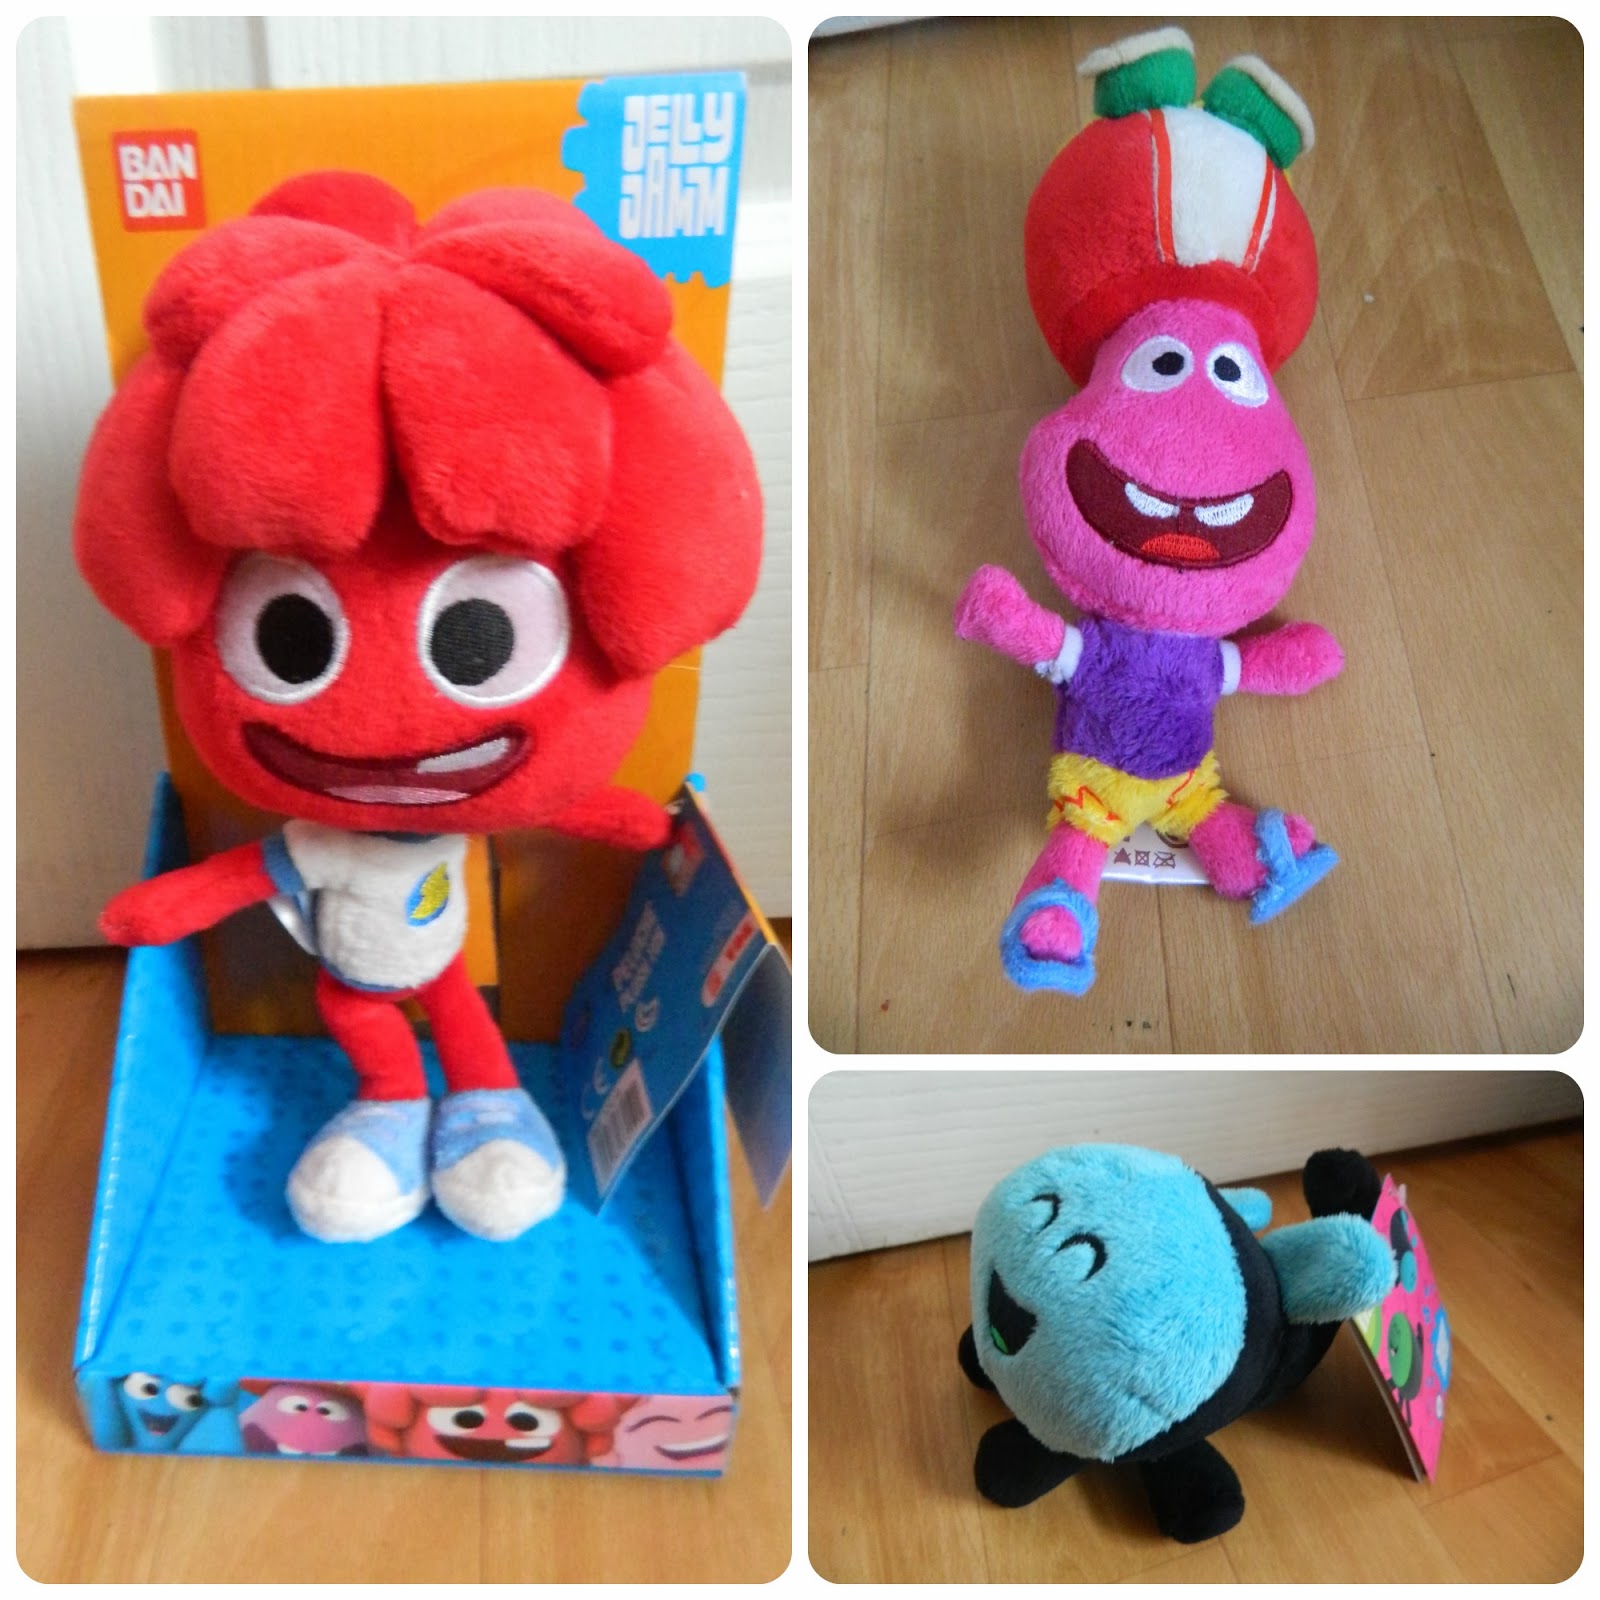 Jelly Jamm Plush toys range Bello Dodo Goomo